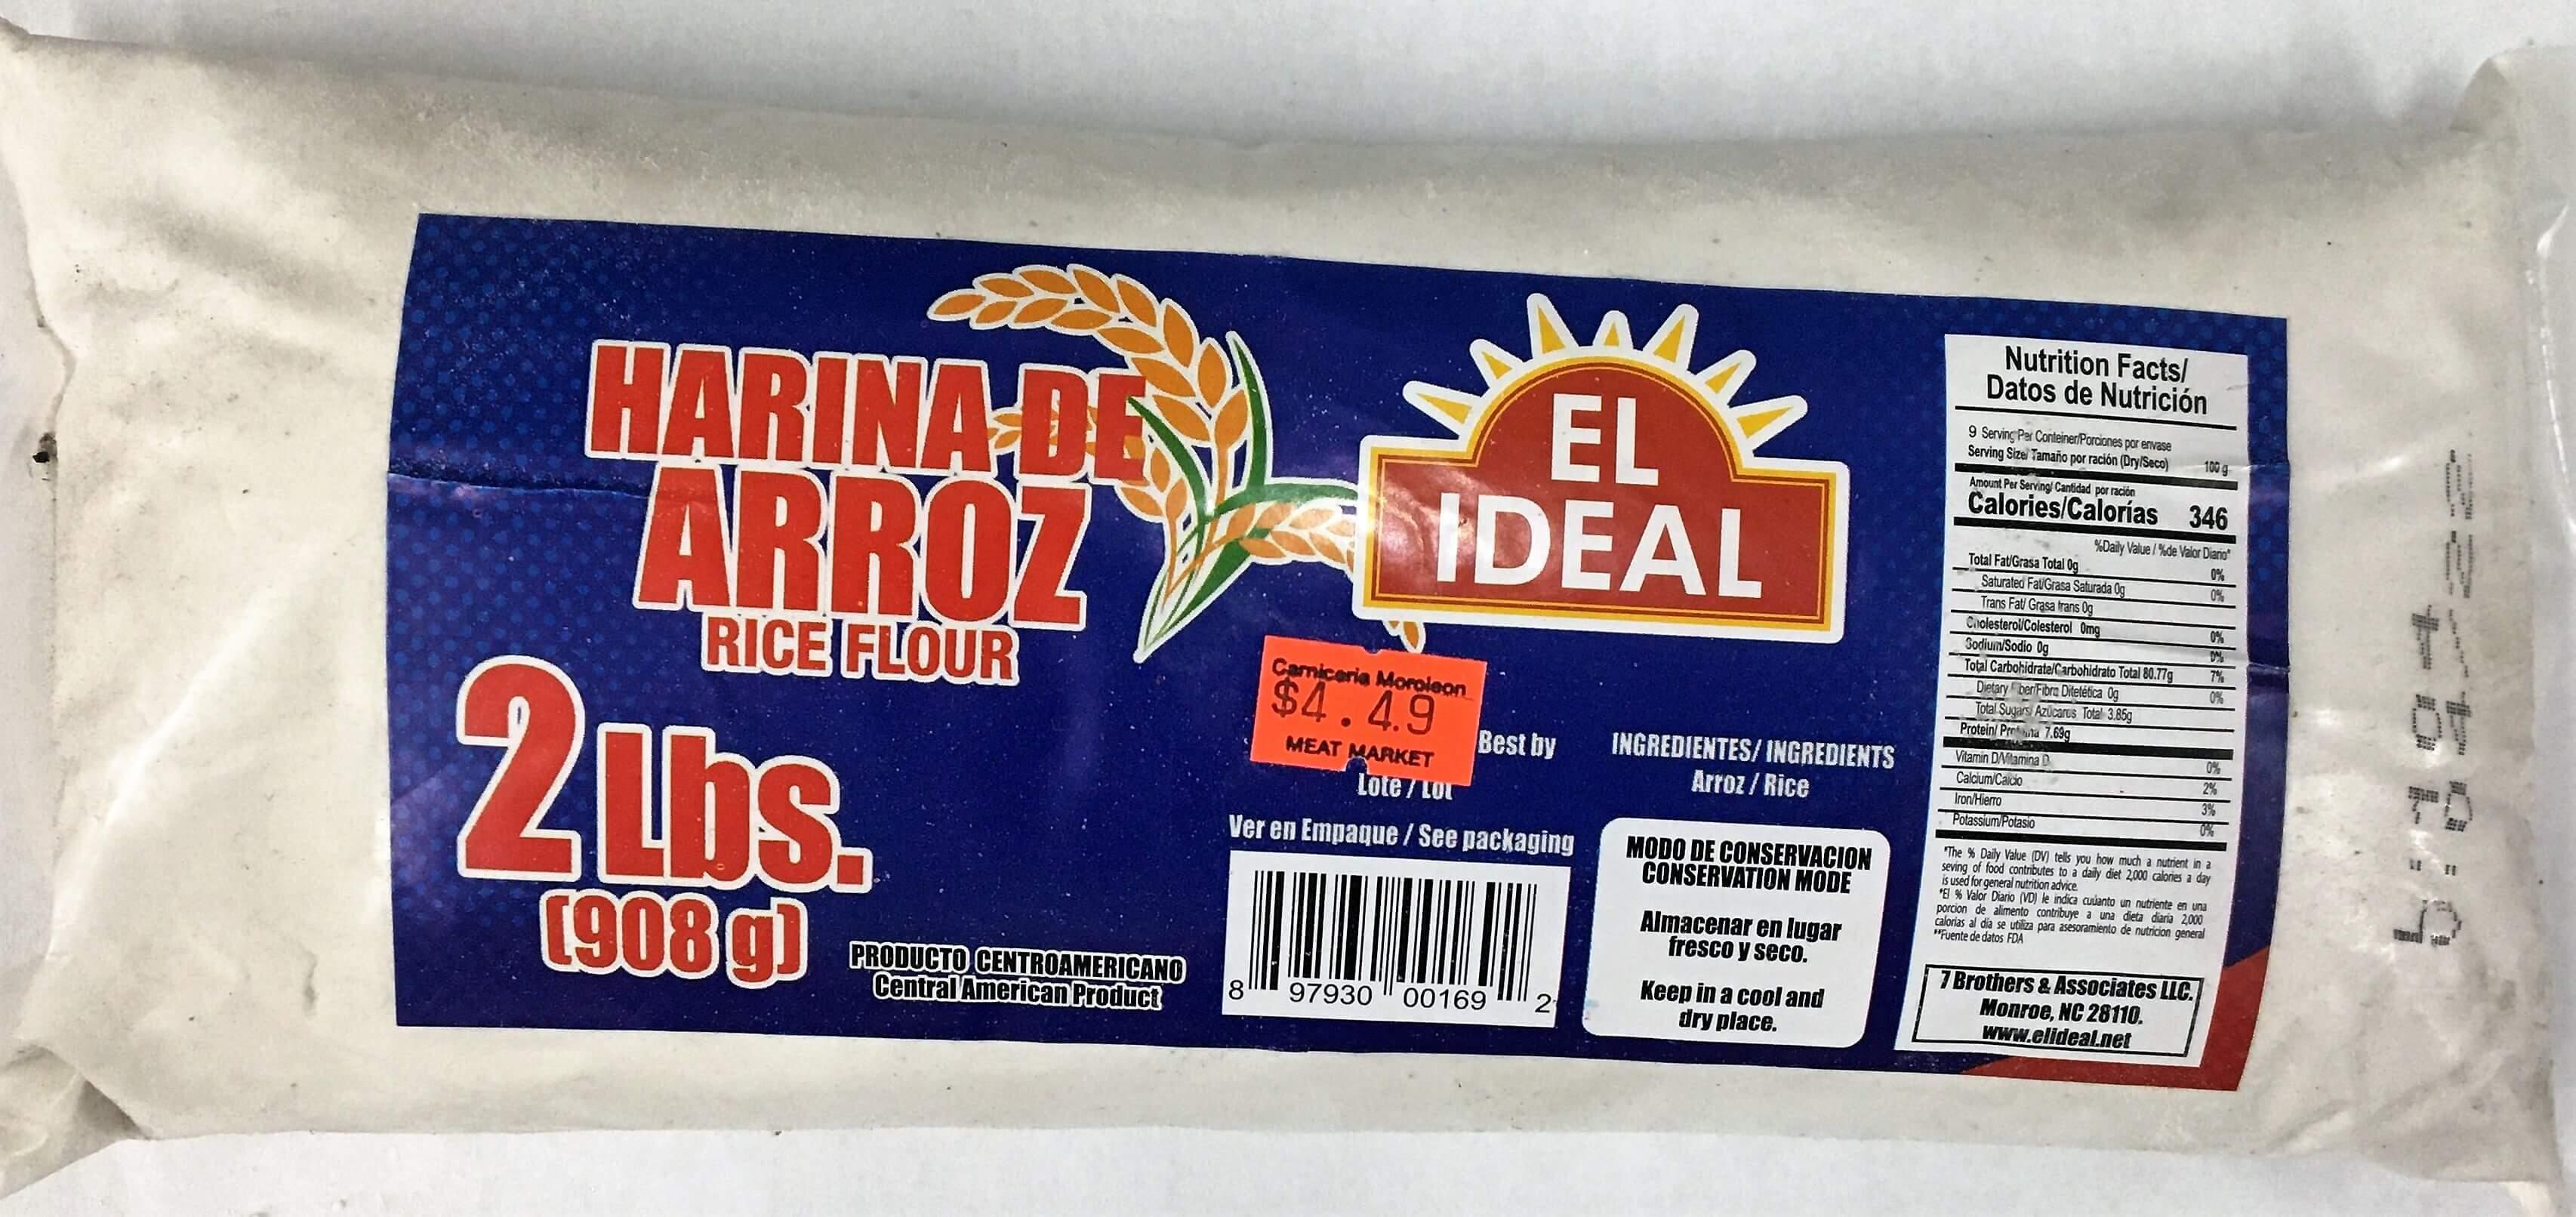 El Ideal - Rice Flour 2Lbs.